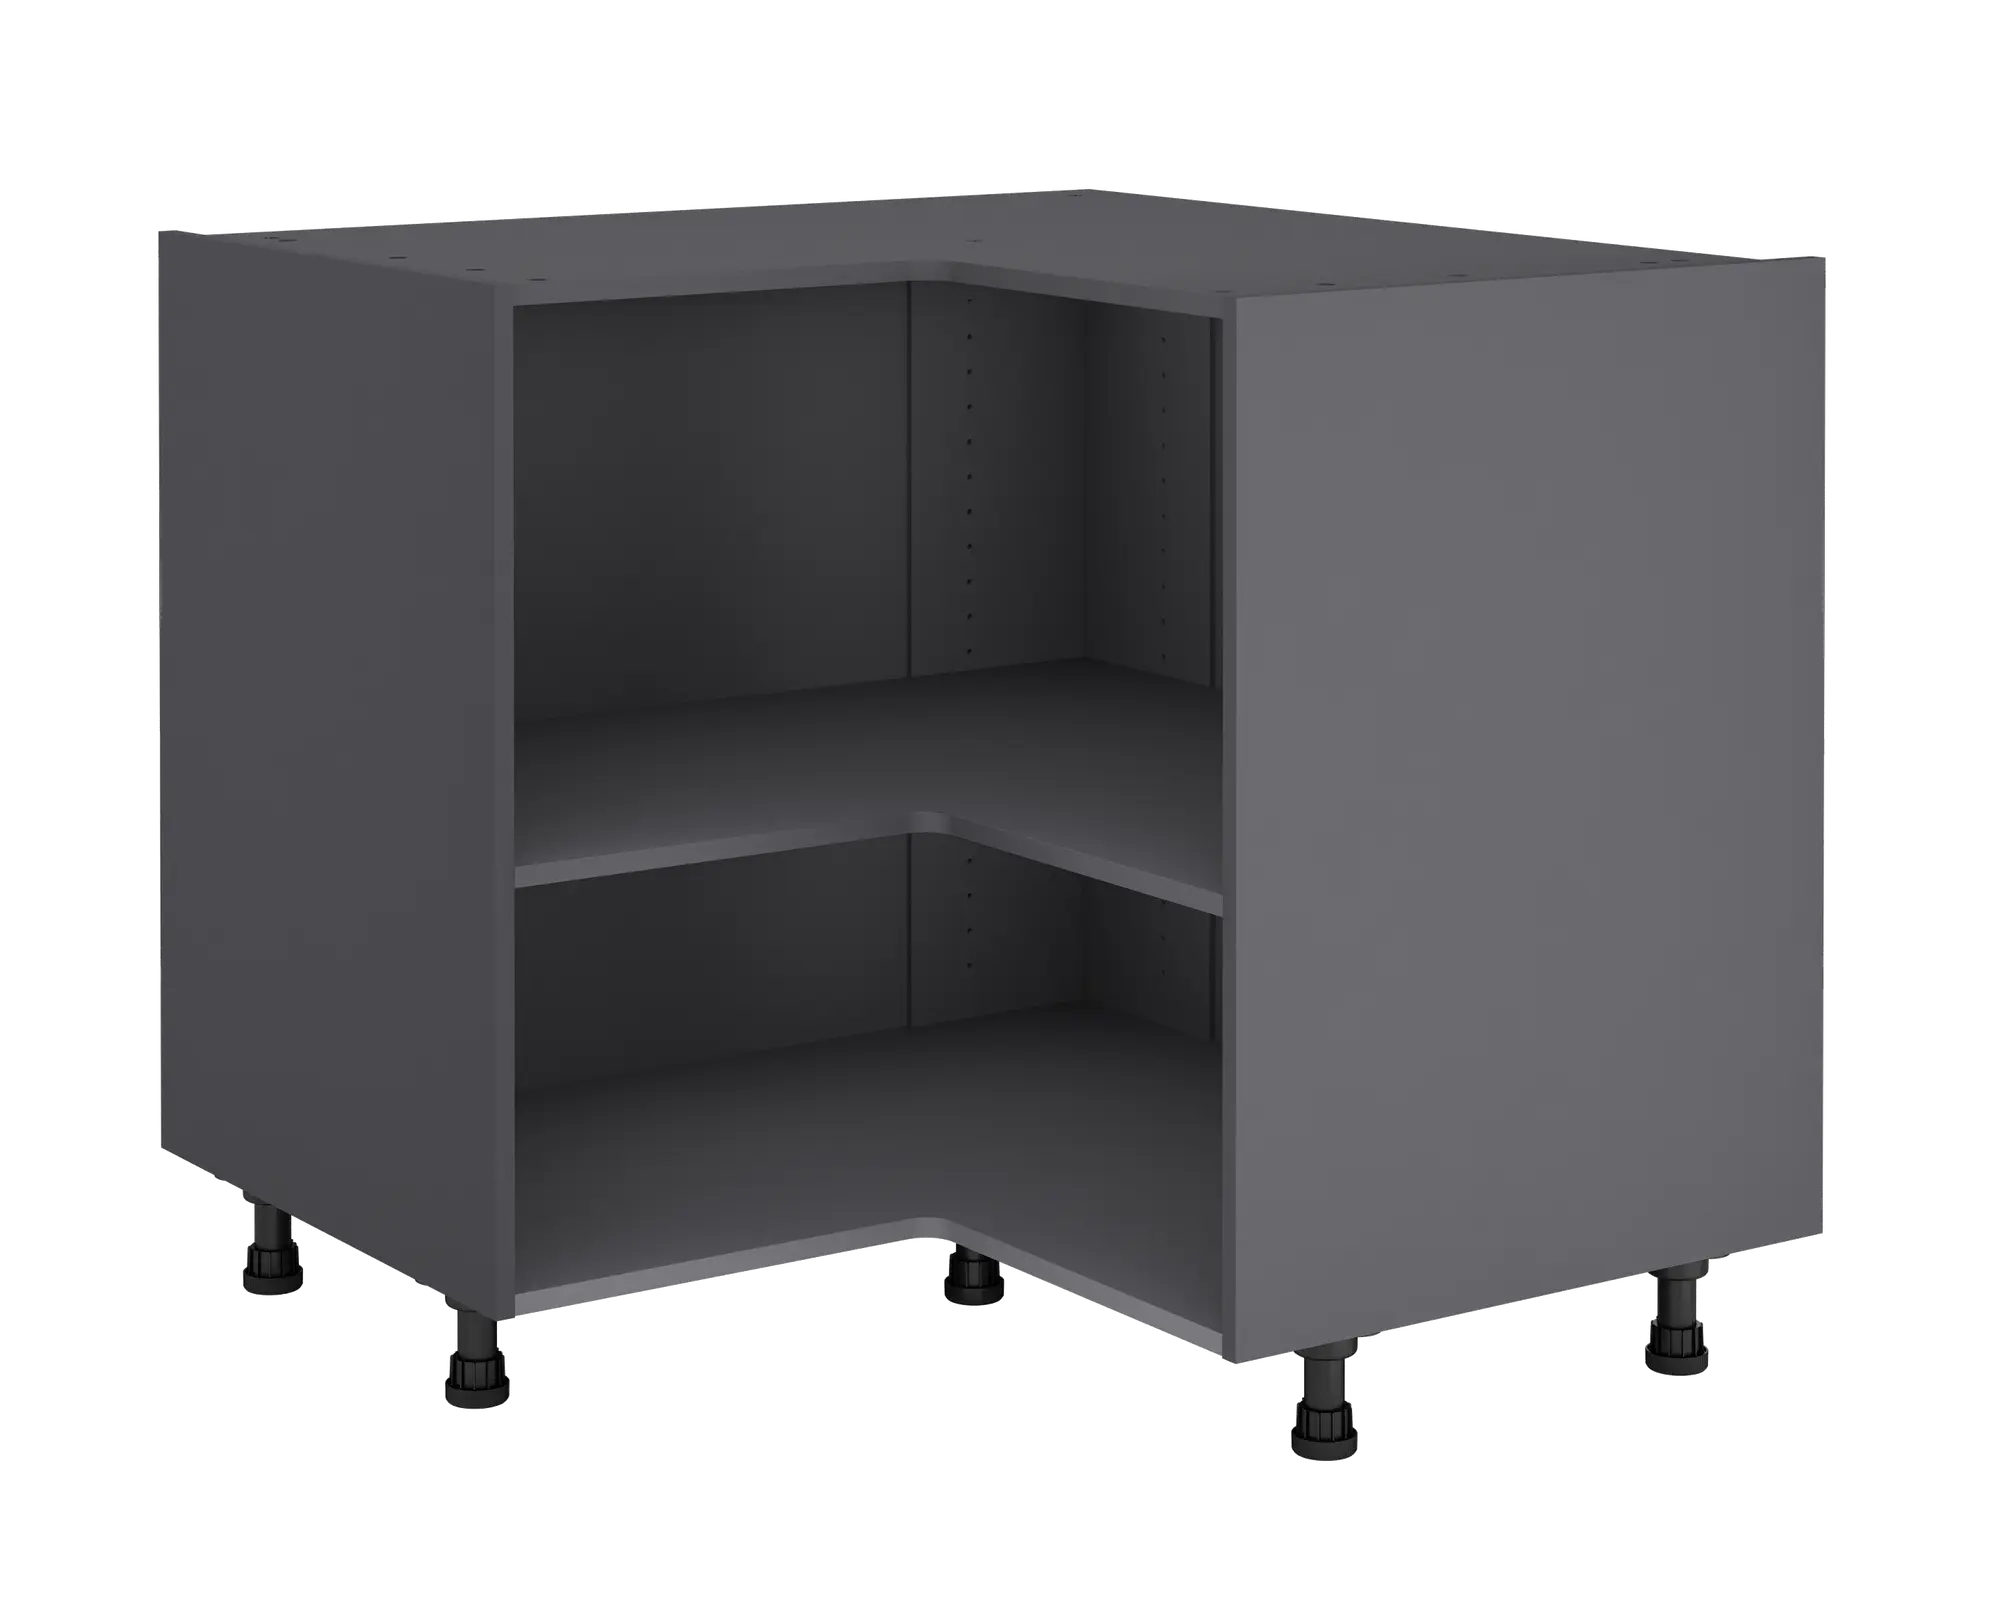 Mueble bajo de ángulo gris delinia id 97x76,8 cm